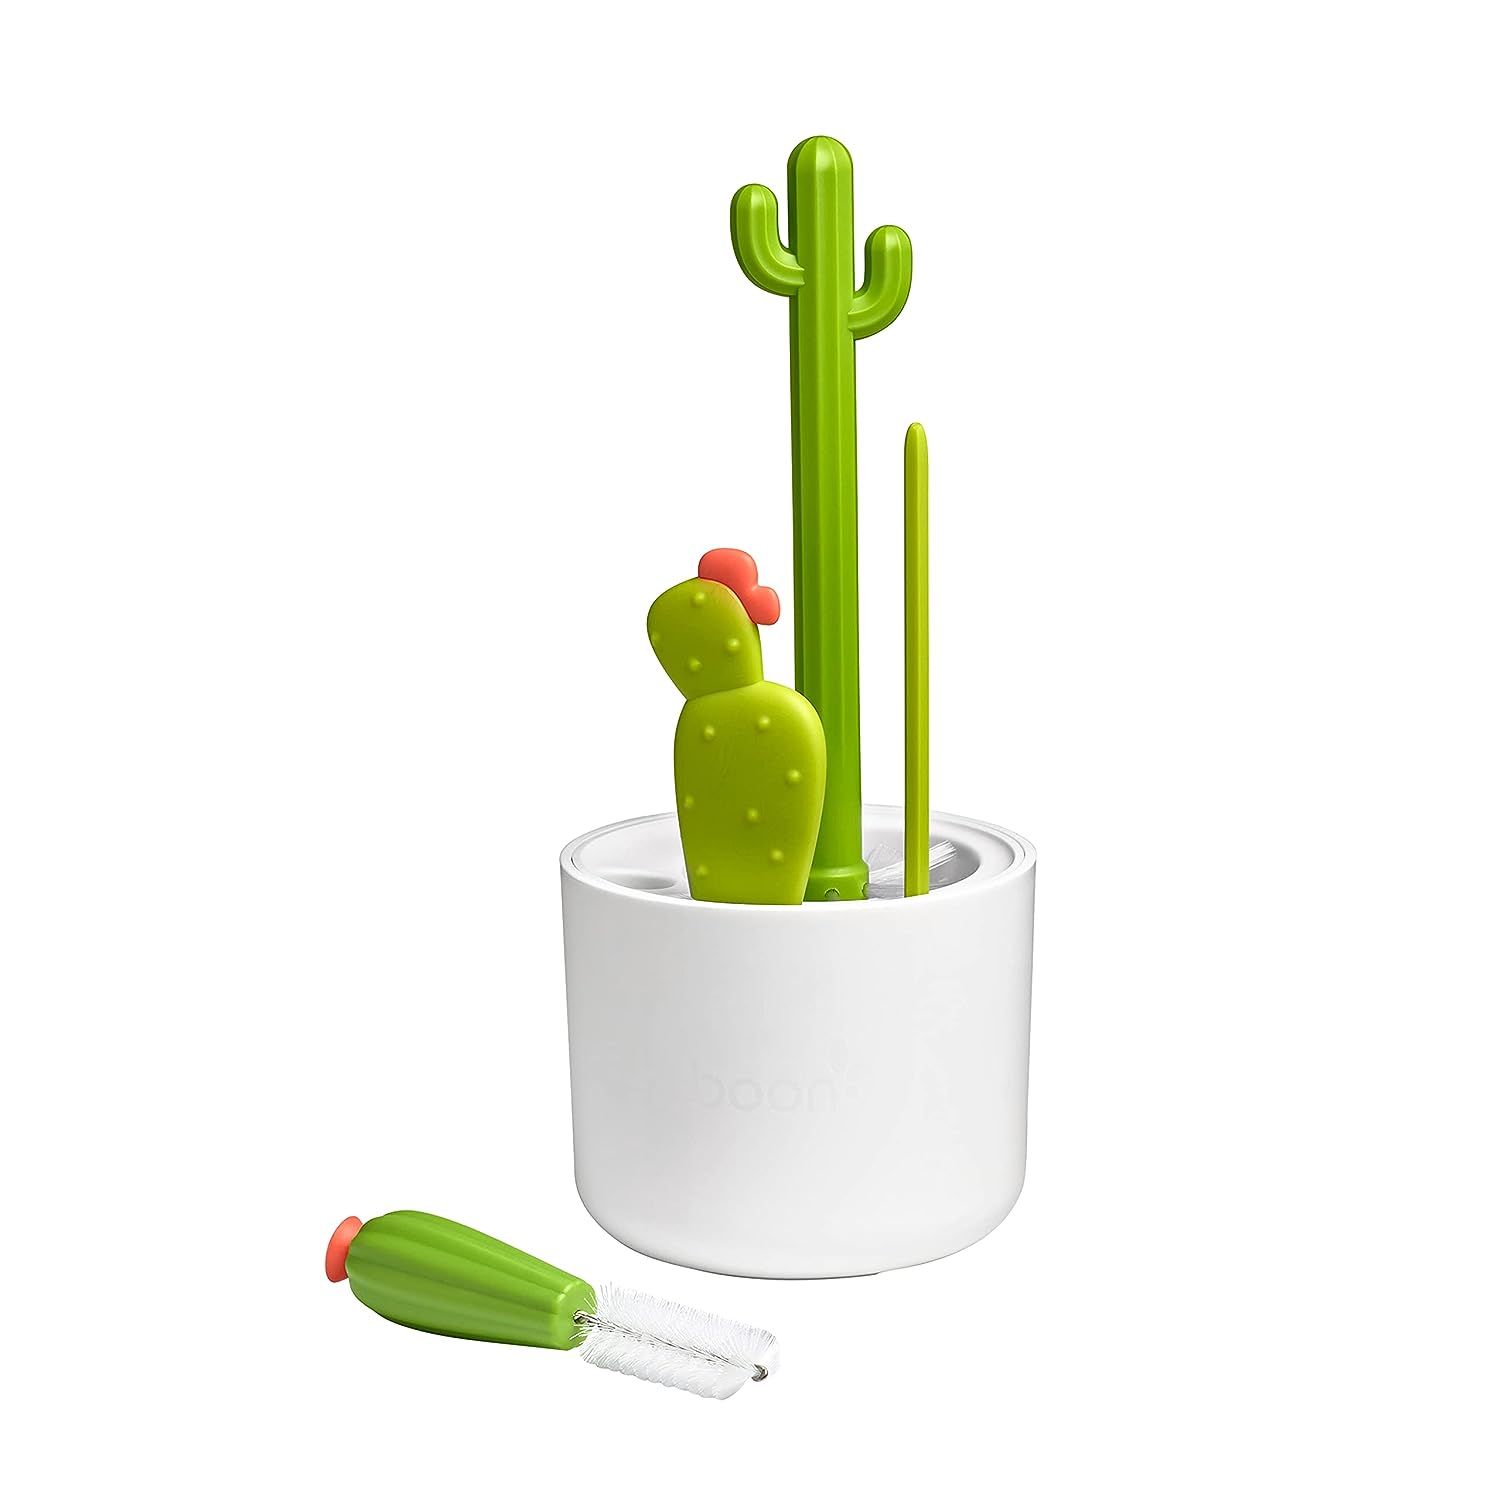 Boon Cacti Bottle Cleaning Brush Set | Amazon (US)